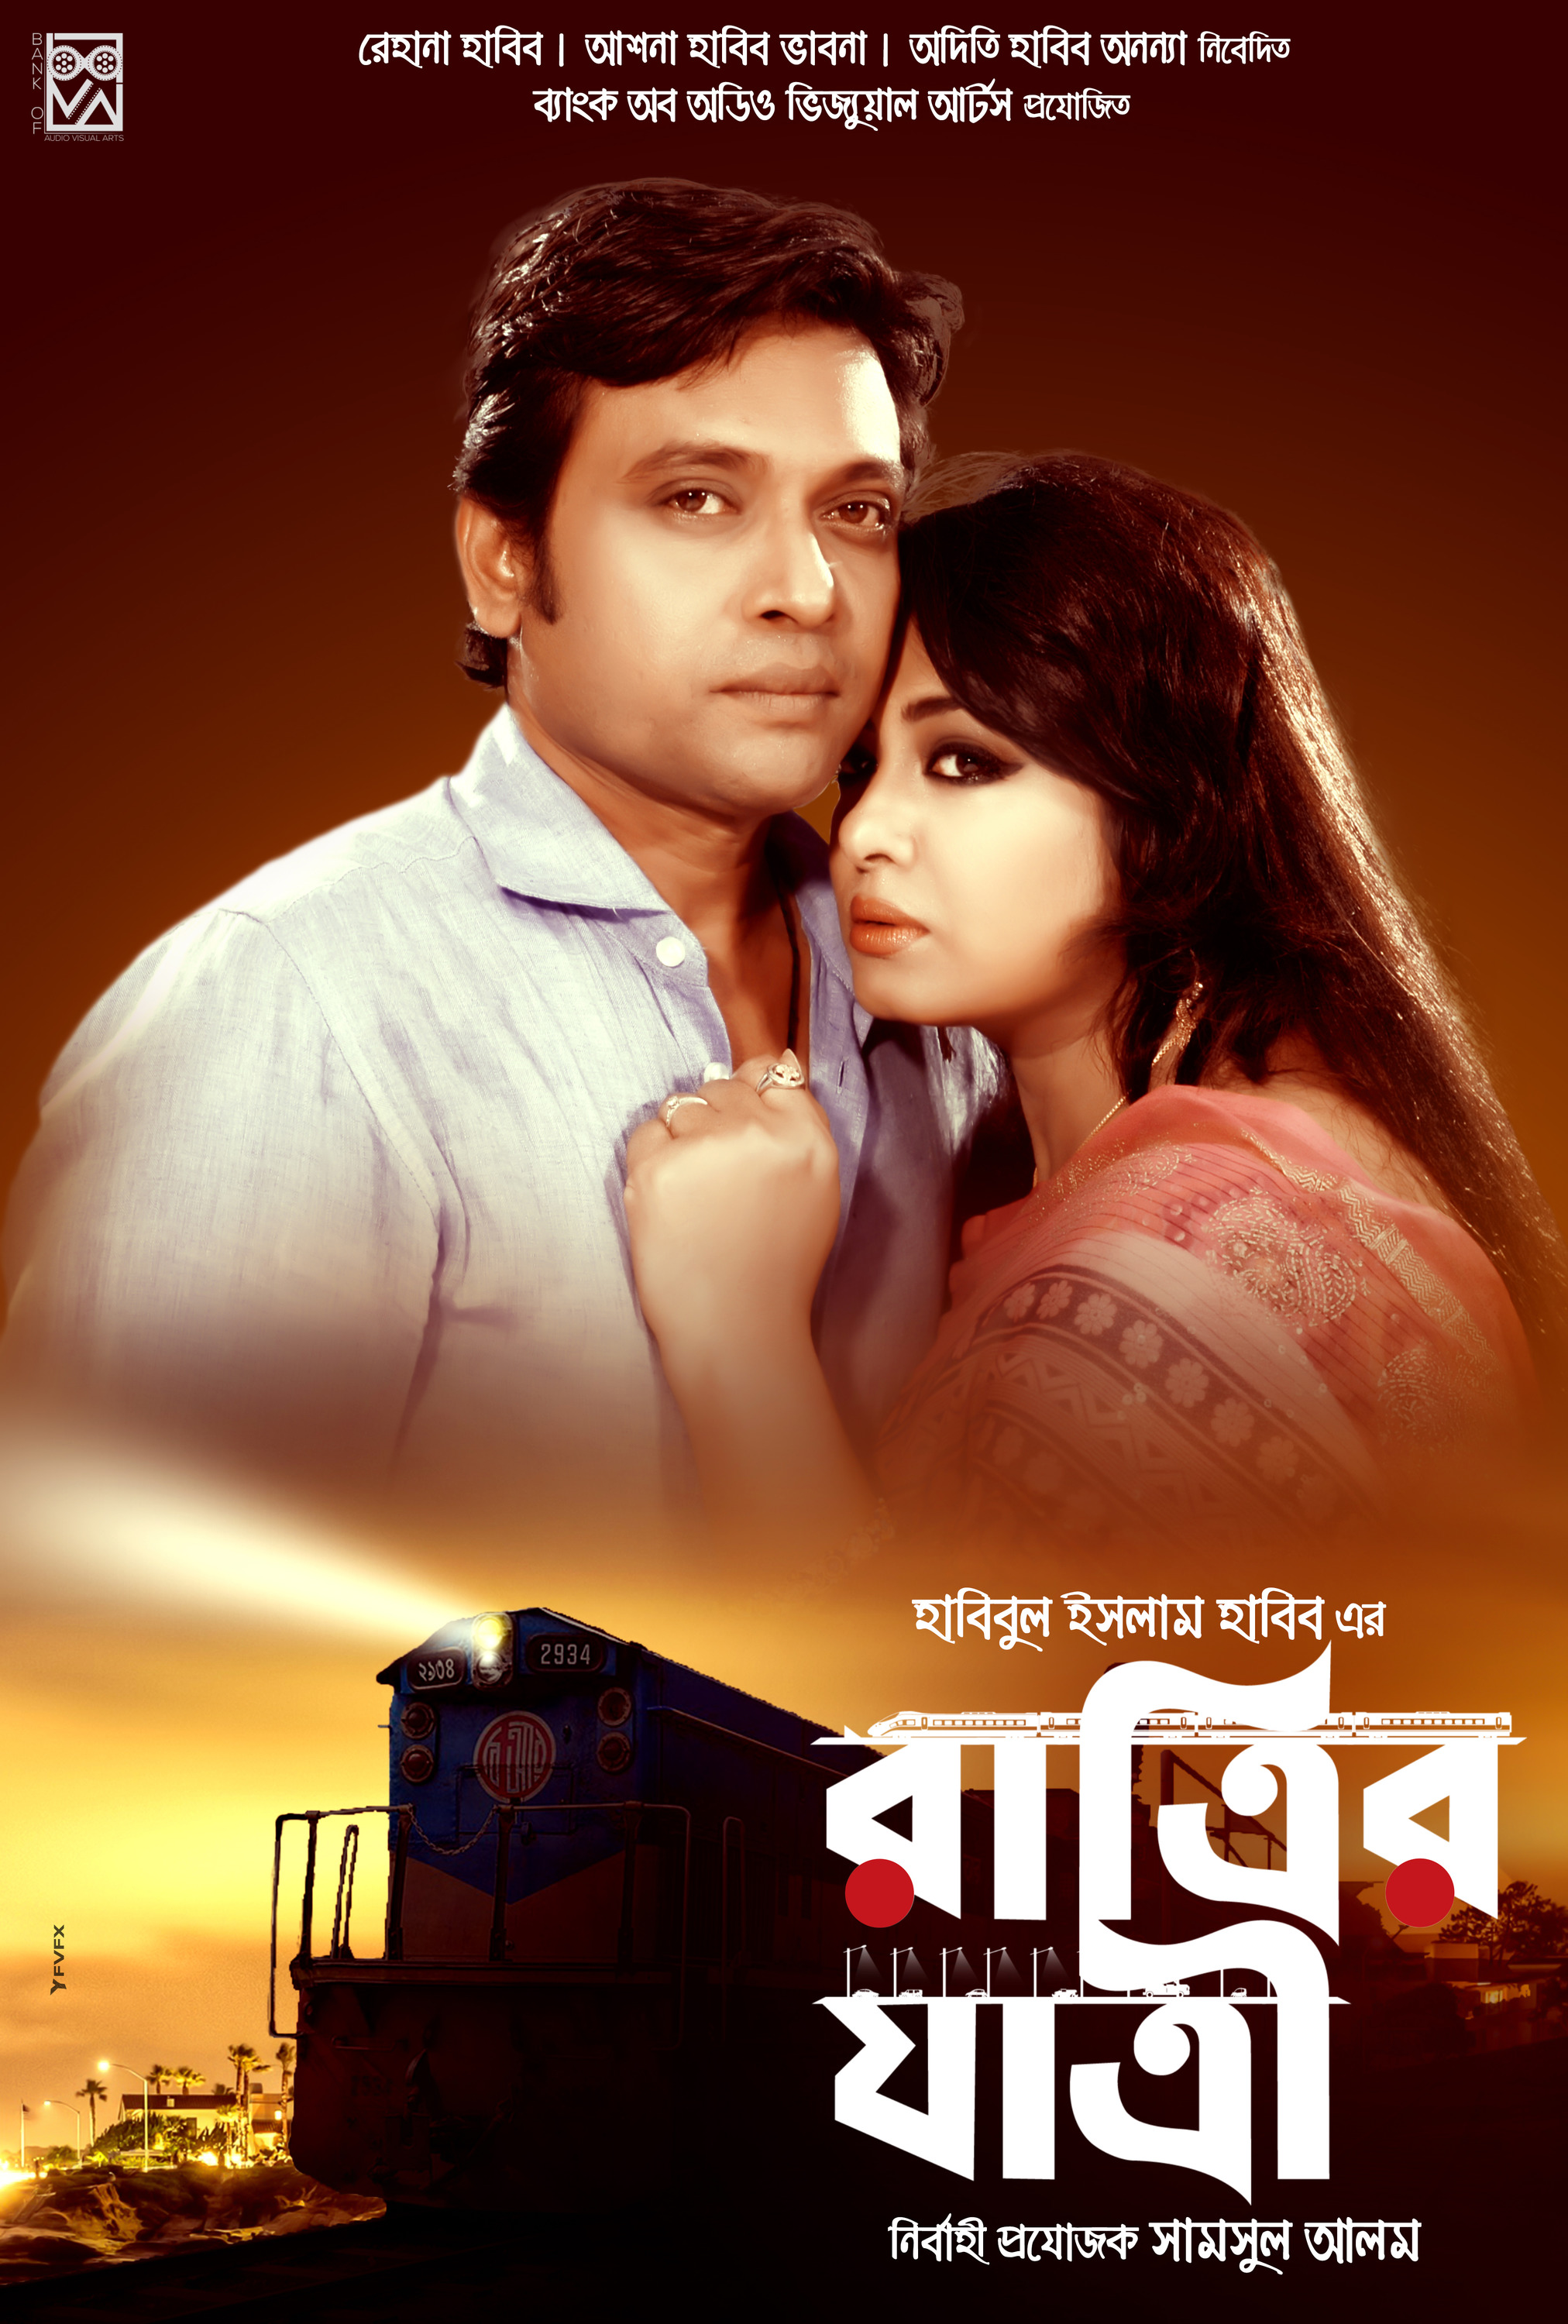 Mega Sized Movie Poster Image for Ratrir Jatri (#4 of 5)